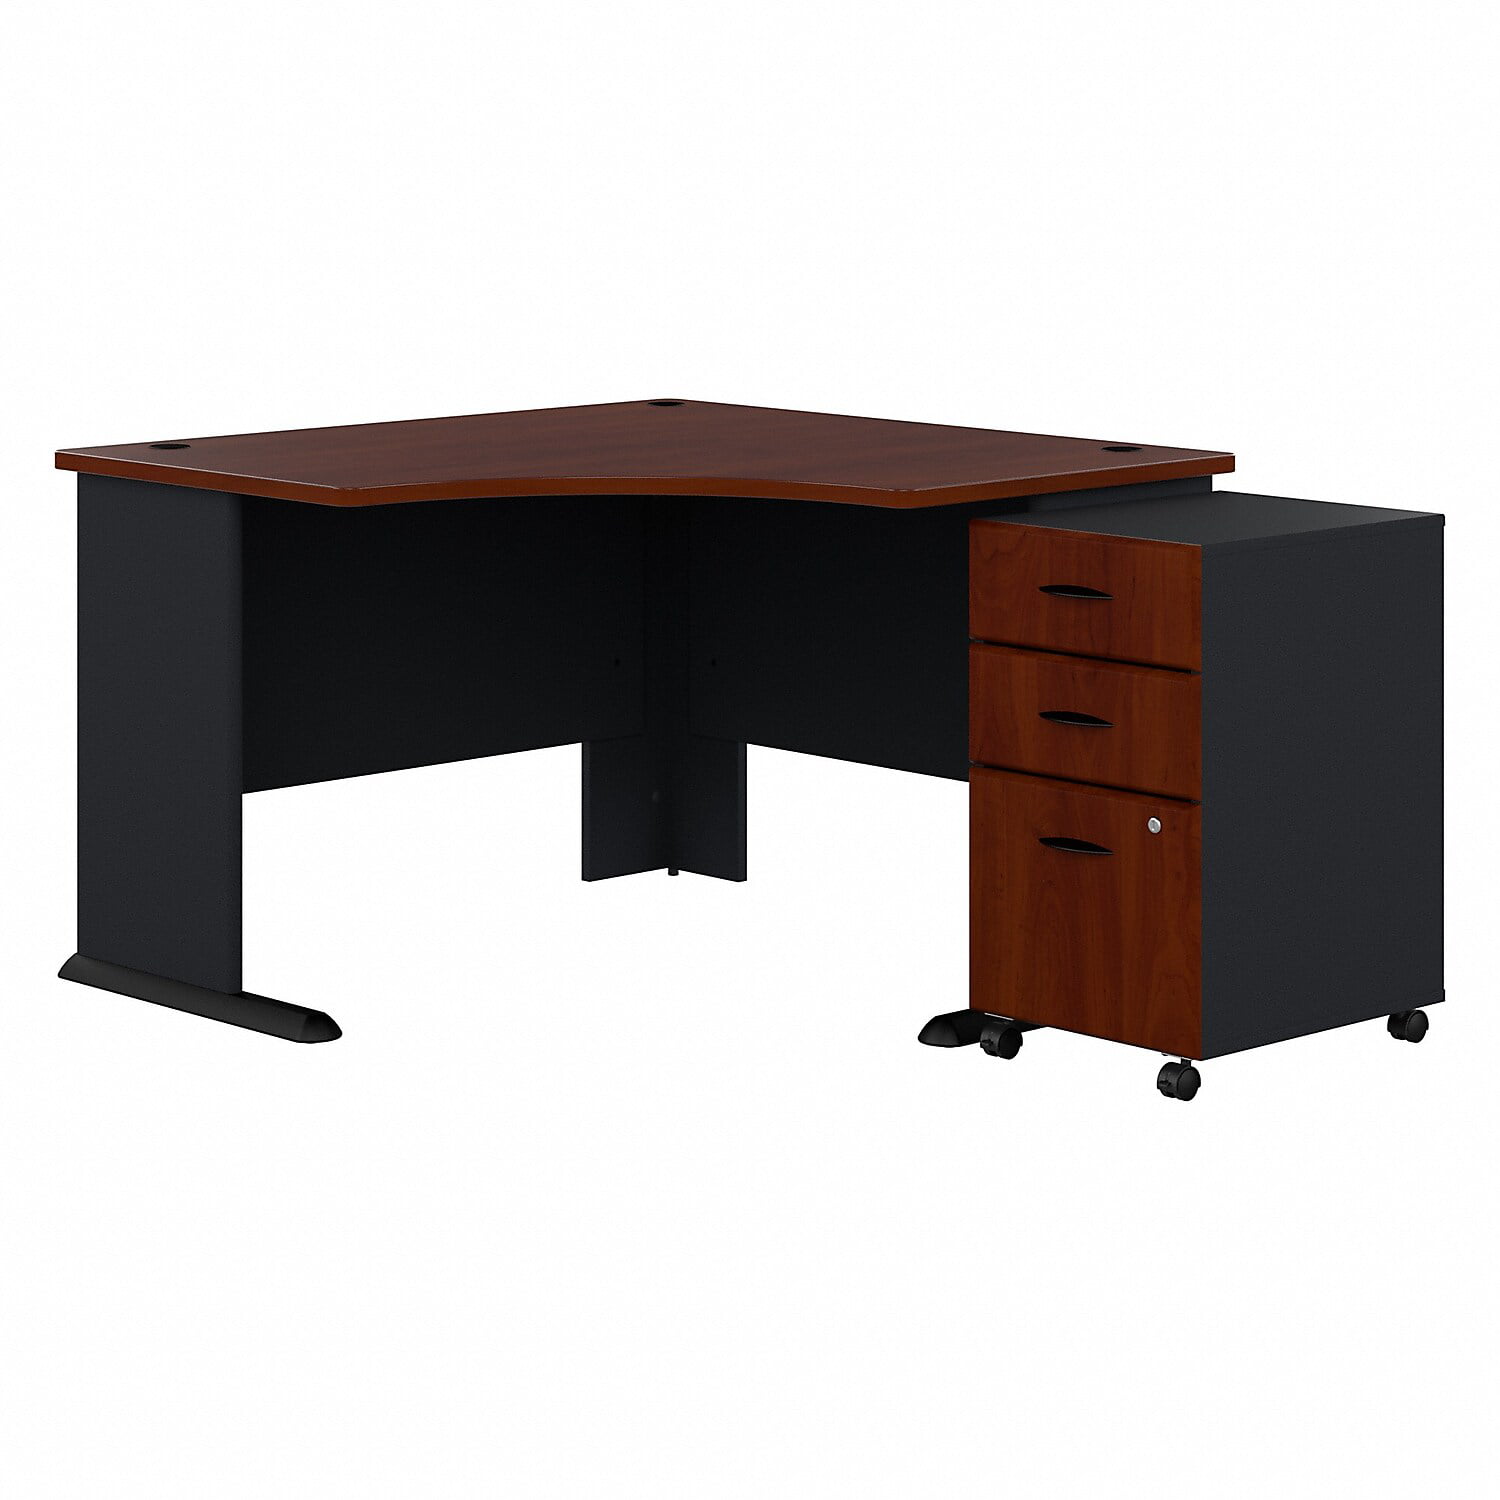 Sra035hcsu 48 In. Series A Corner Desk With Mobile File Cabinet - Hansen Cherry